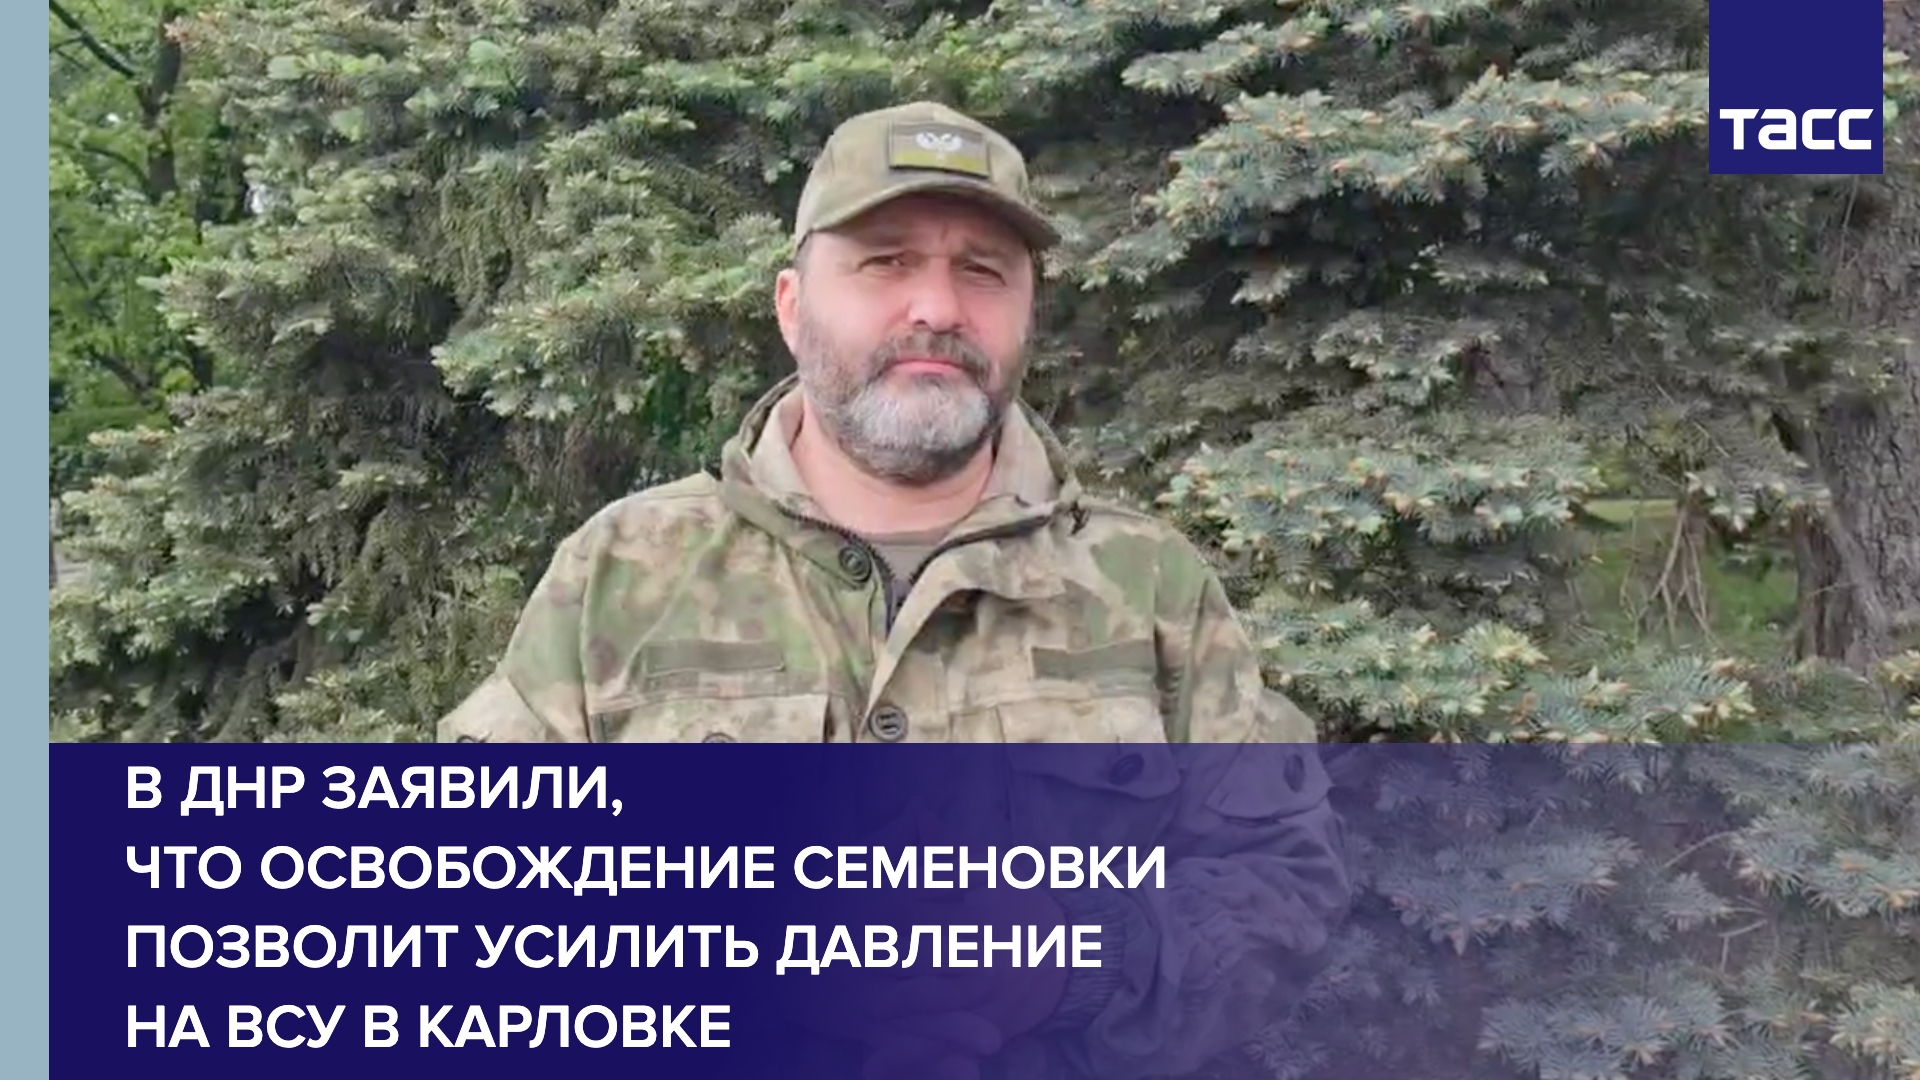 Освобождение Семеновки позволит усилить давление на ВСУ в Карловке, заявил ТАСС Кимаковский